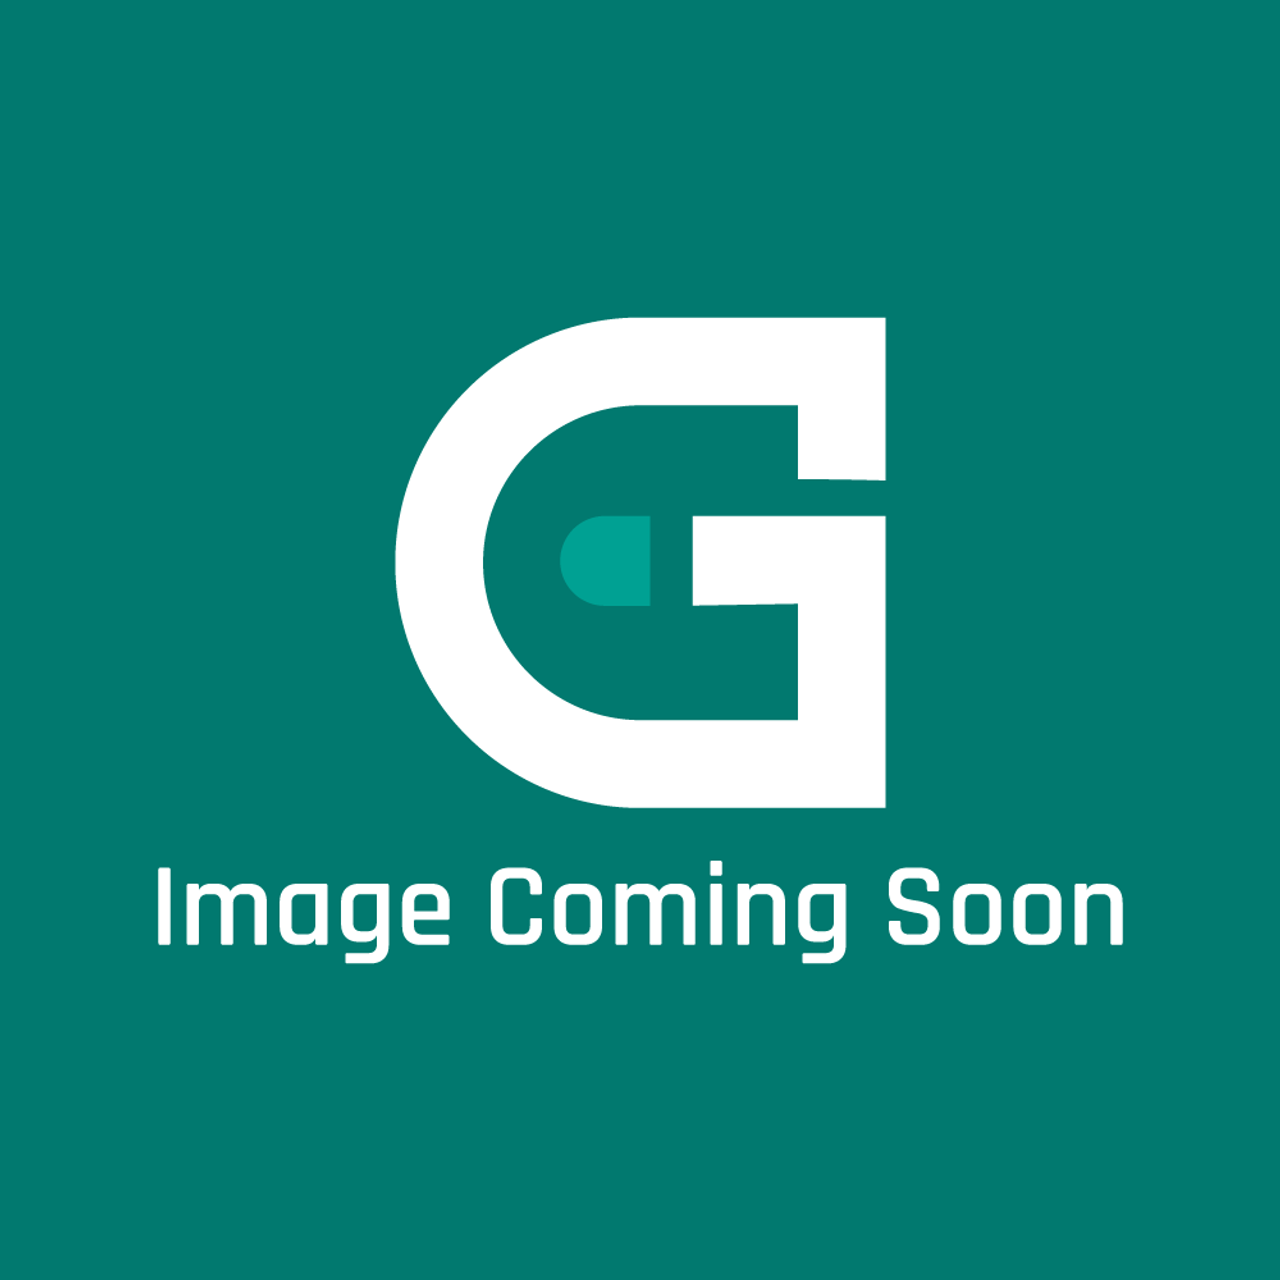 Viking G3209506FGBR - 48" LH DOOR ASSY *FGBR* - Image Coming Soon!